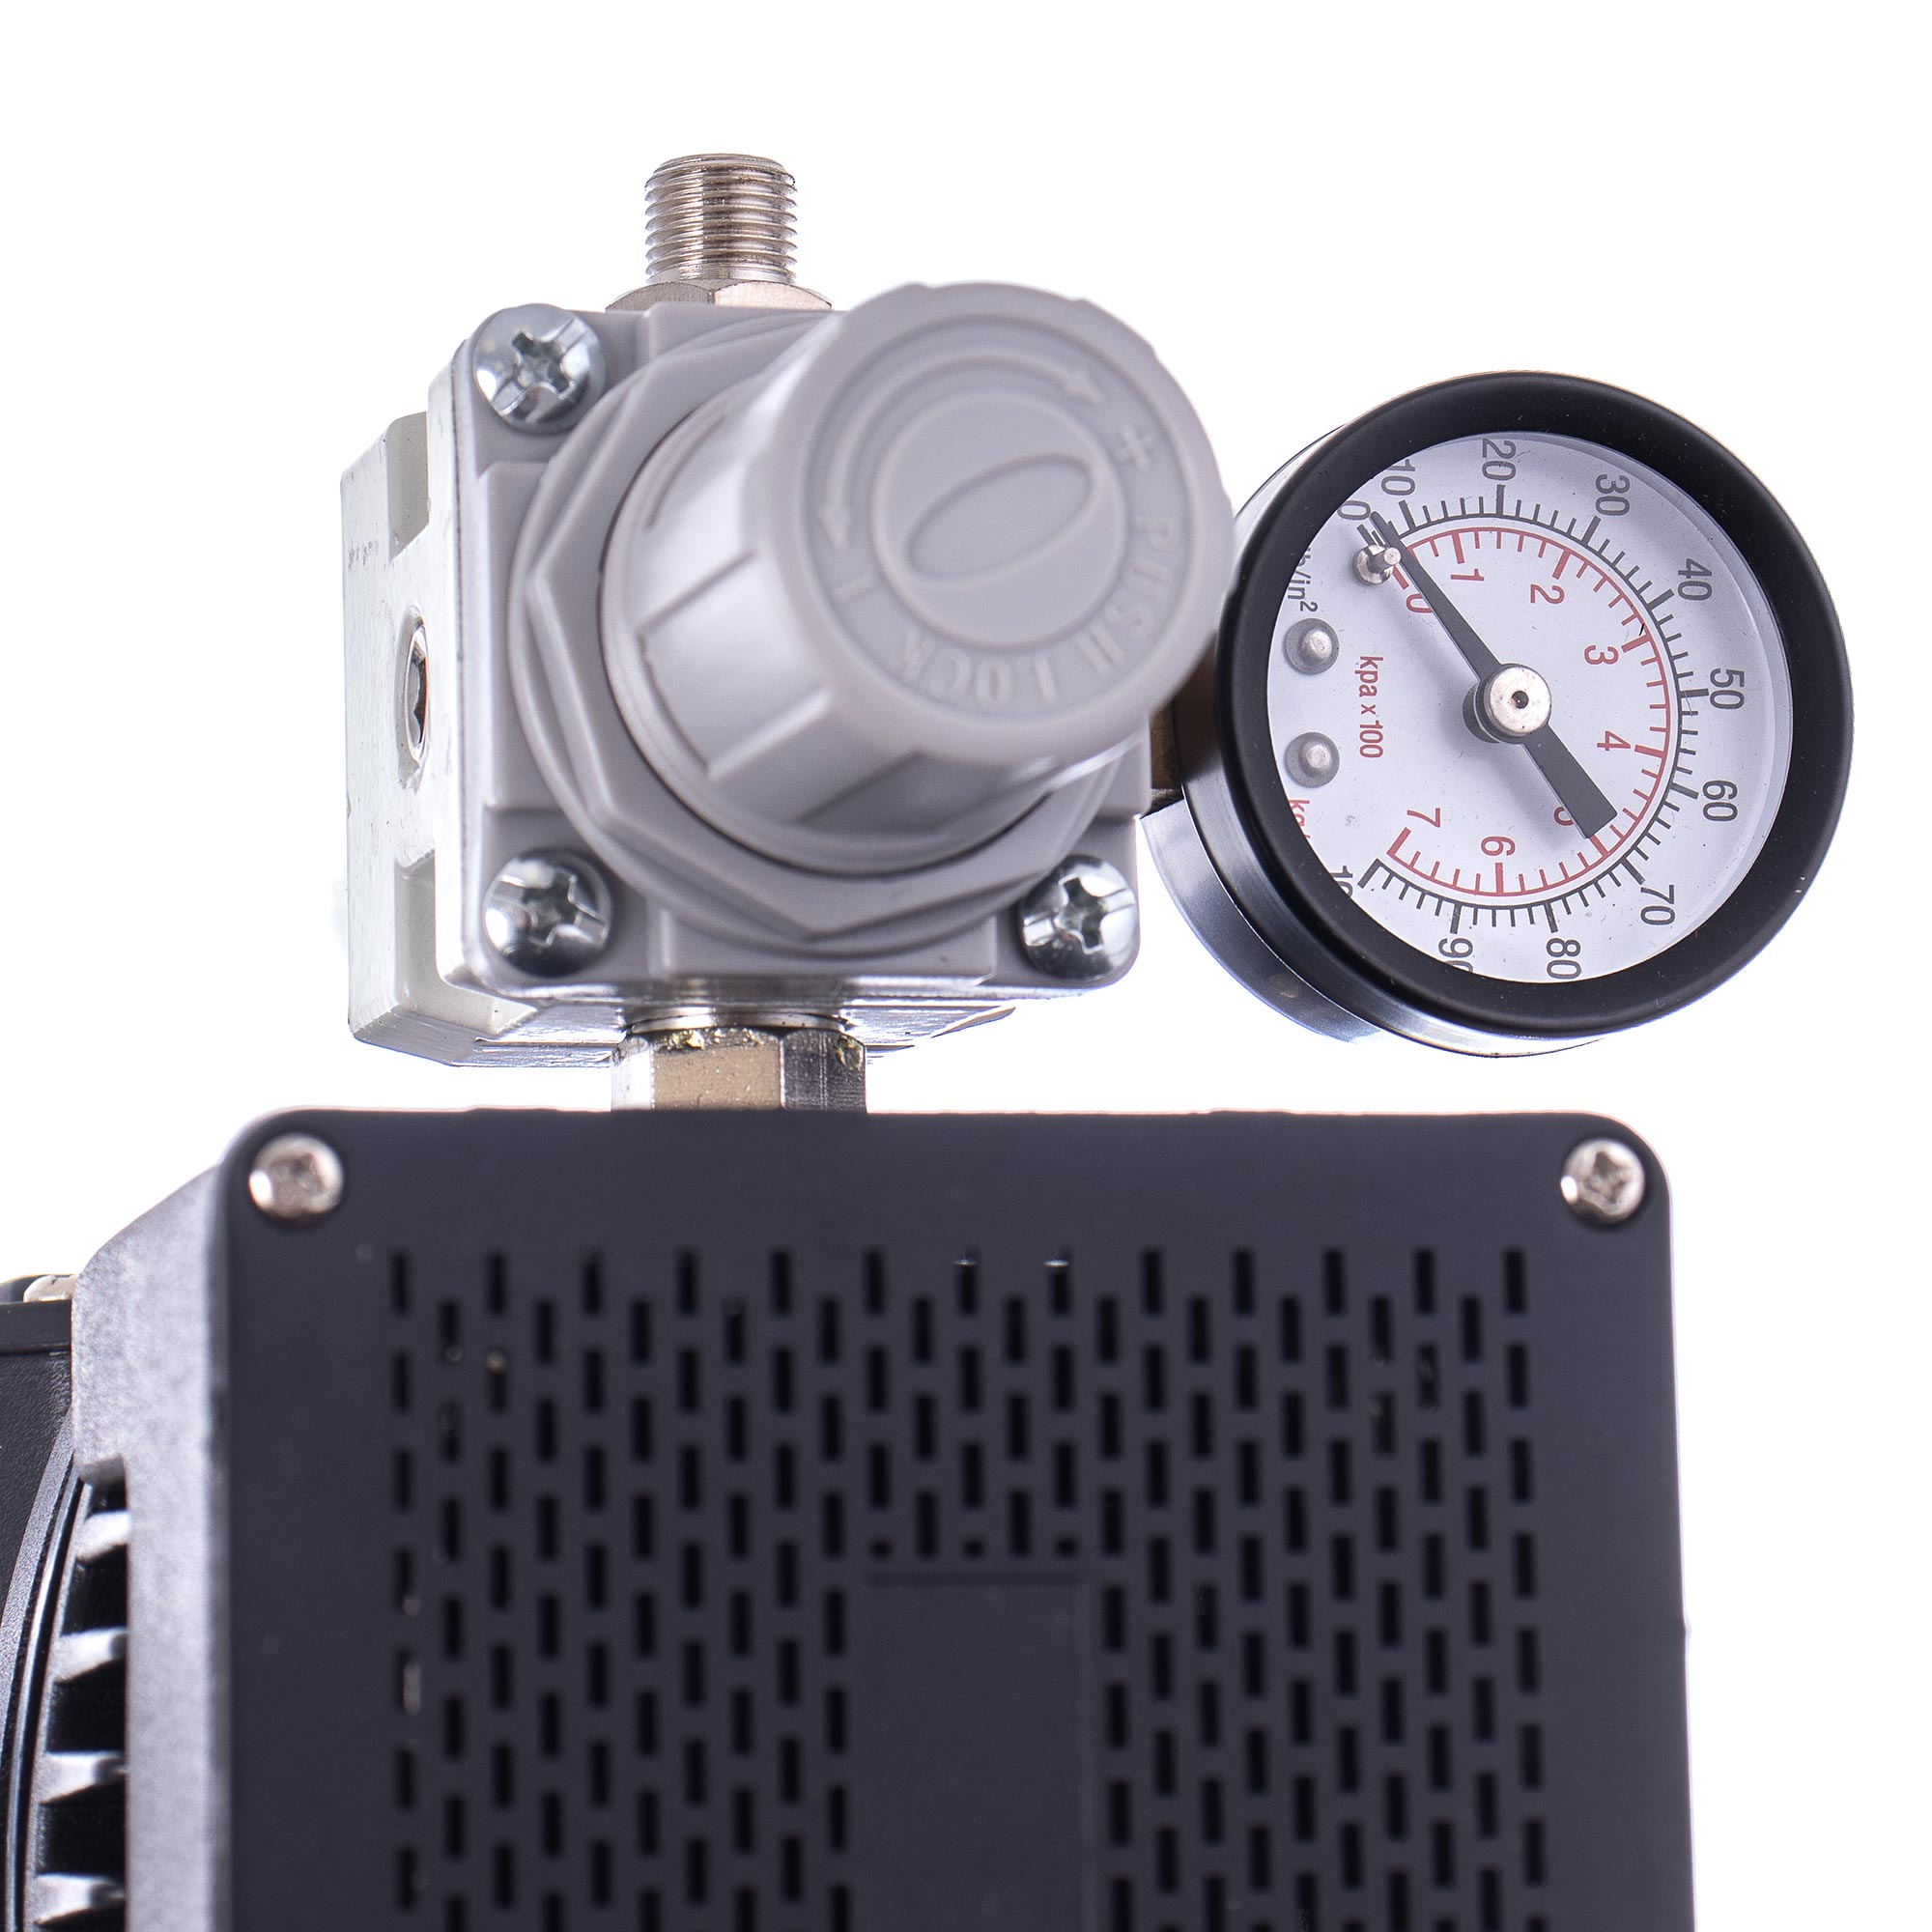 Kompresor, AG-420 FENGDA pro Airbrush 2x Ventilátor 4,5bar redukce + filtr